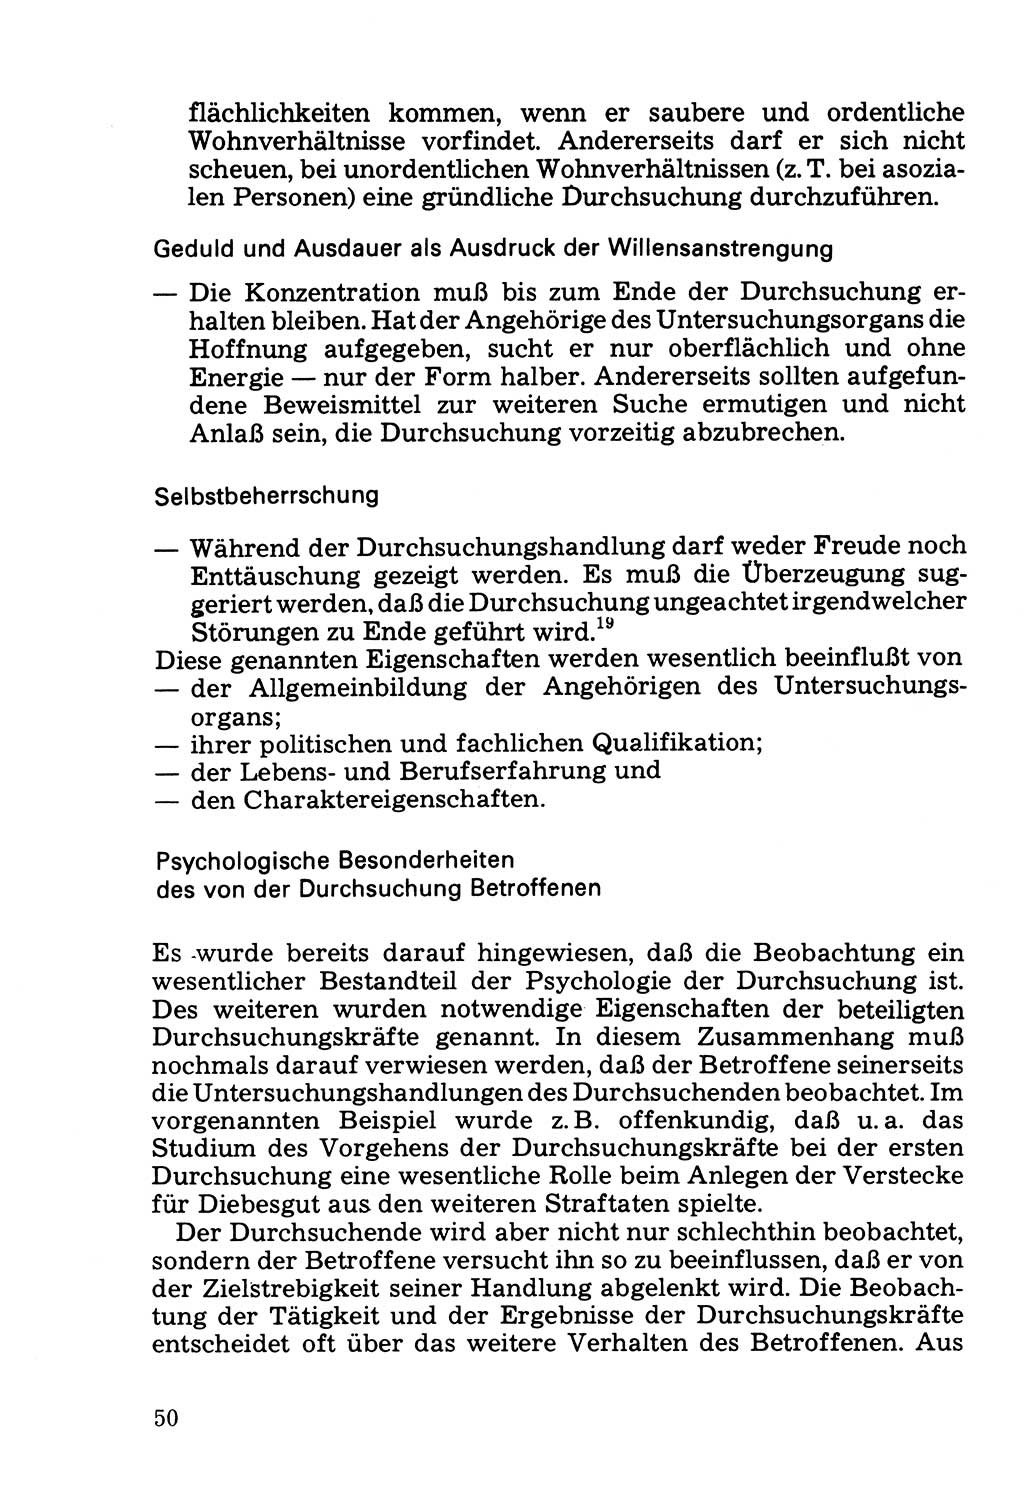 Die Durchsuchung und die Beschlagnahme [Deutsche Demokratische Republik (DDR)] 1979, Seite 50 (Durchs. Beschl. DDR 1979, S. 50)